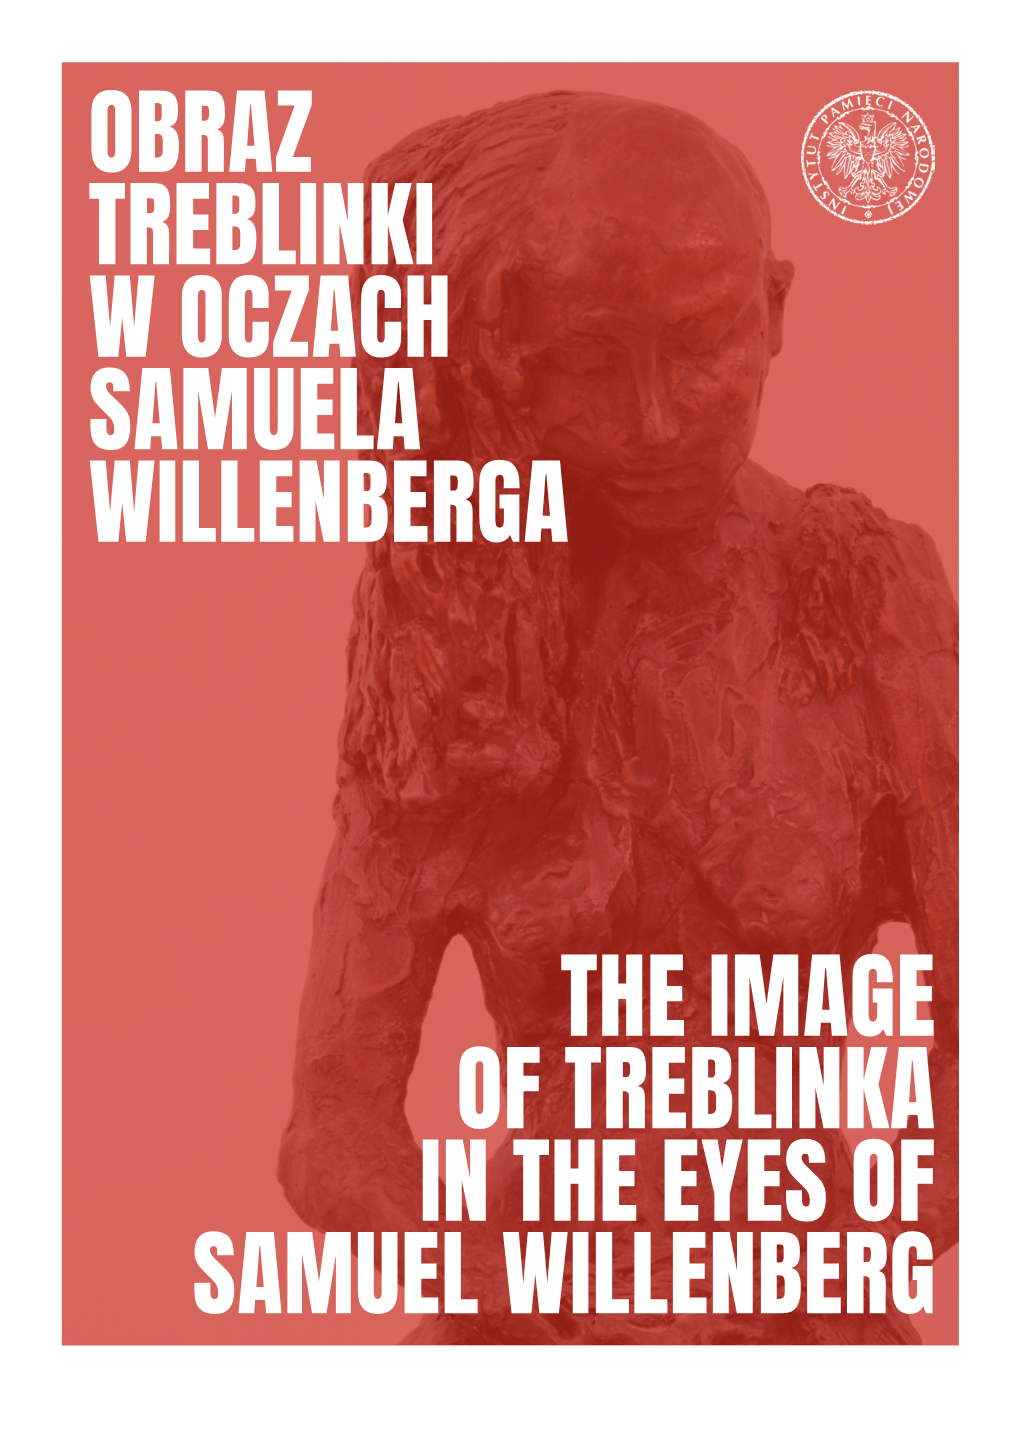 Obraz Treblinki W Oczach Samuela Willenberga